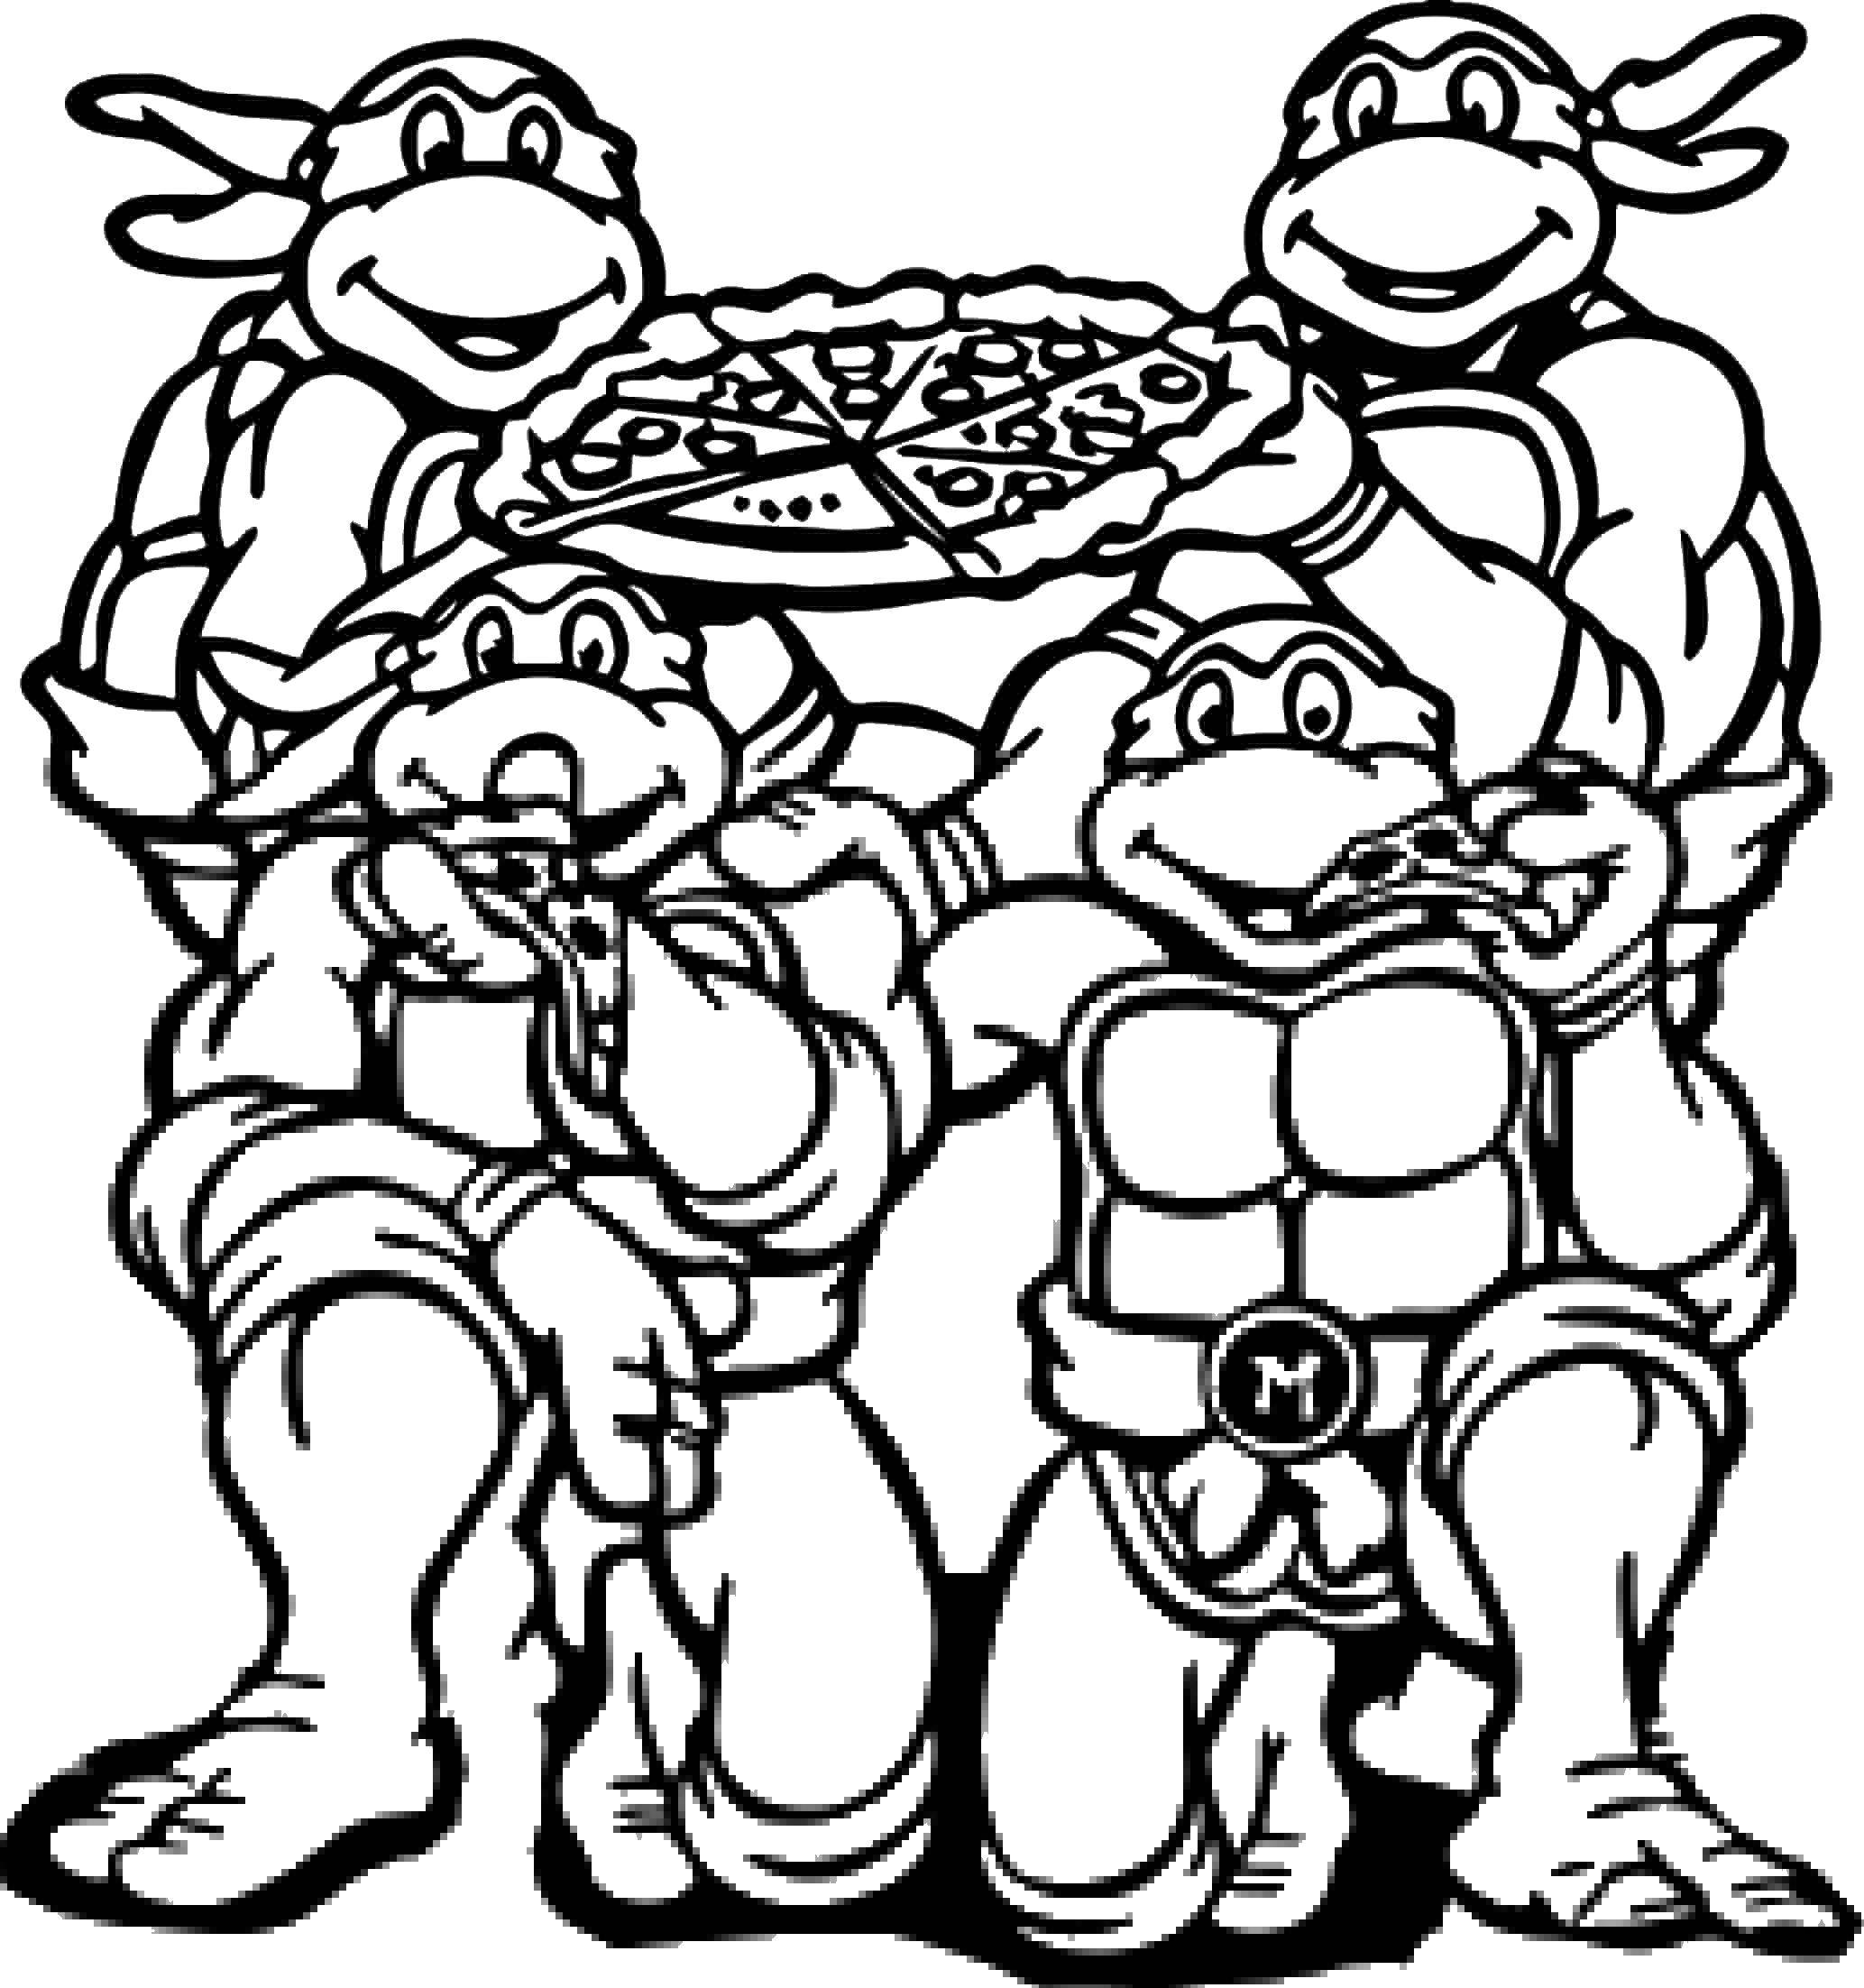 Coloring Teenage mutant ninja turtles. Category cartoon. Tags:  turtles, ninja.